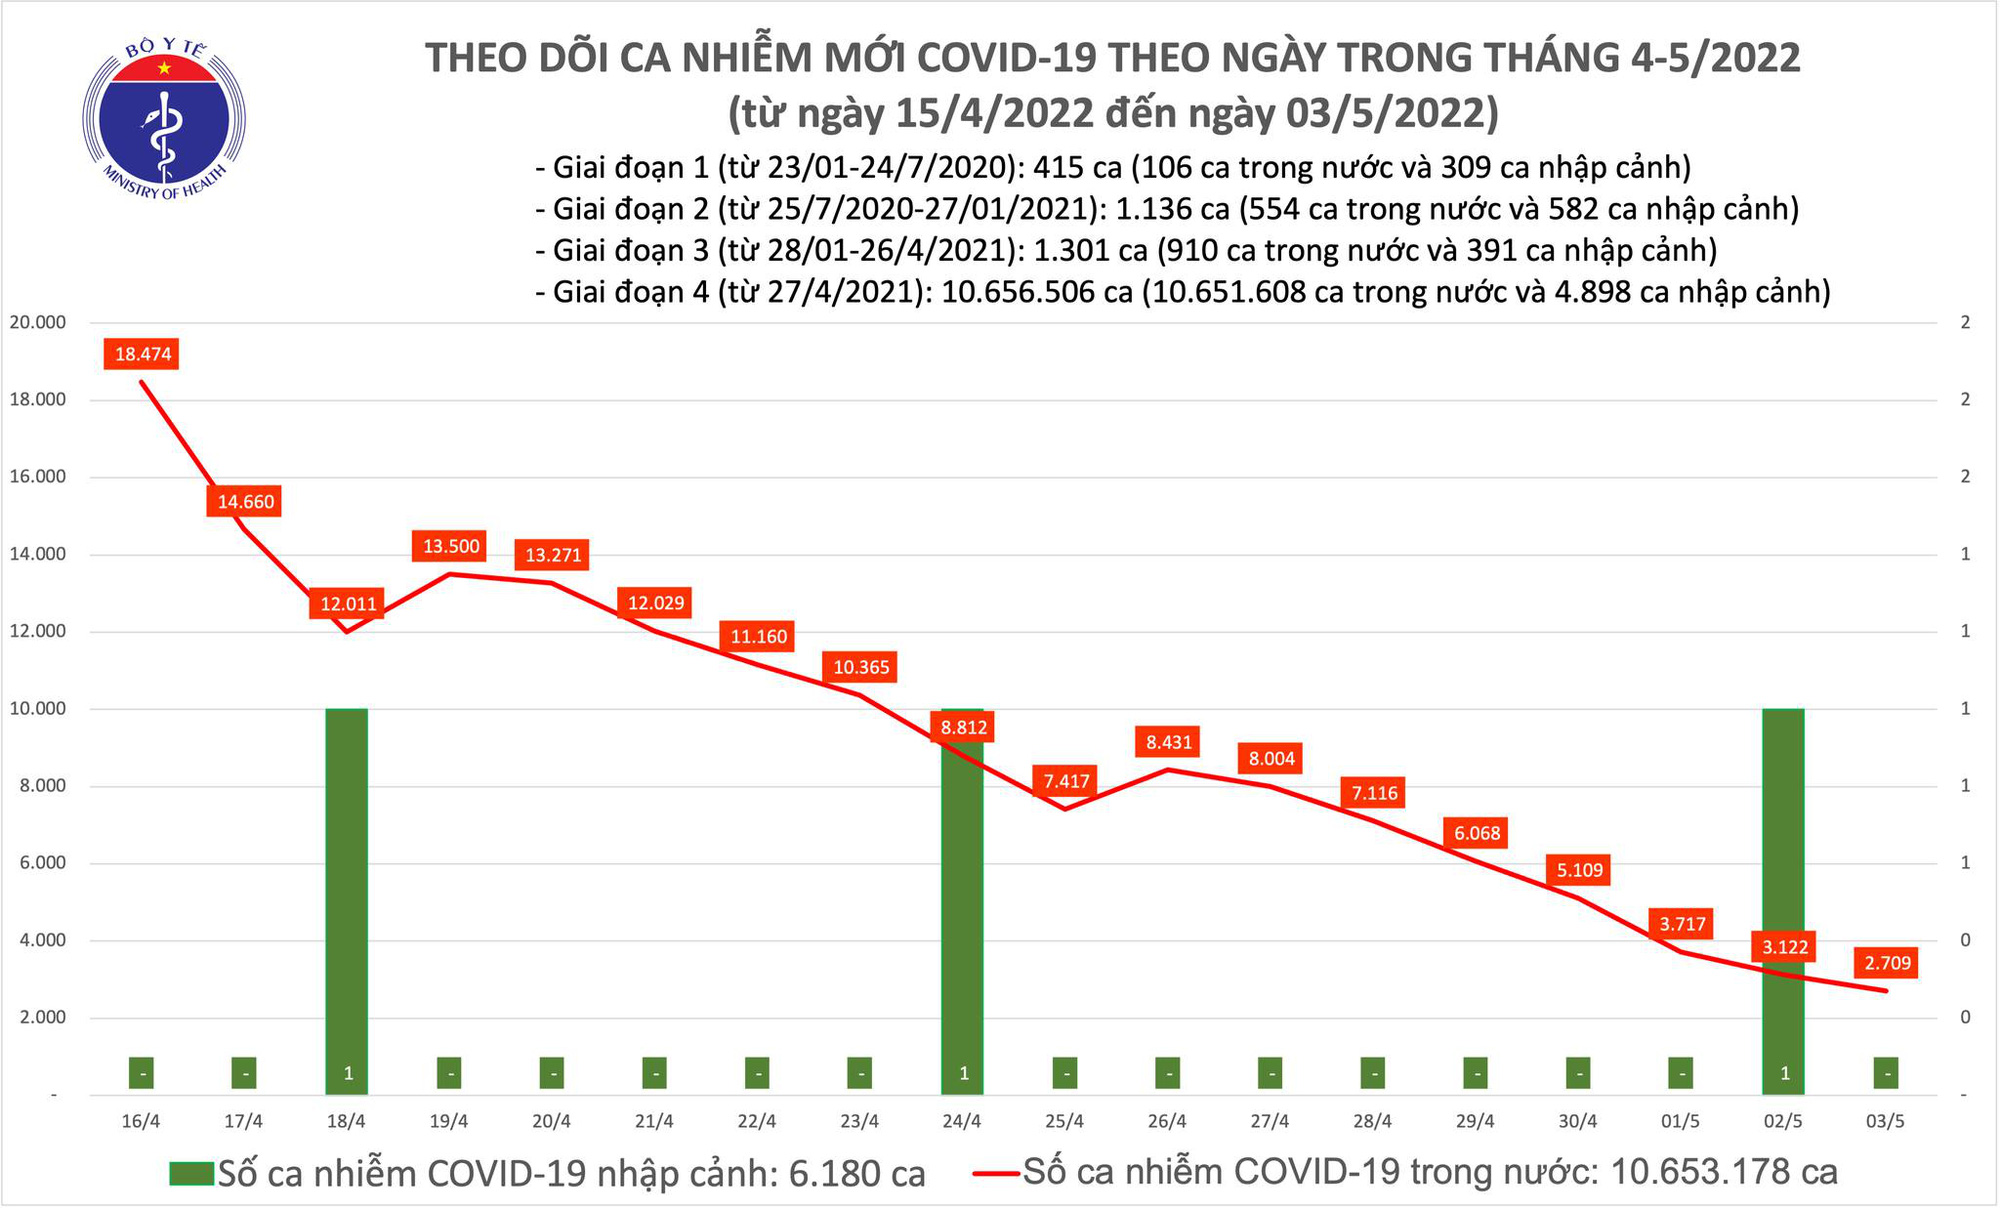 Ngày 3/5: Tin vui chống dịch, ca mắc COVID-19 giảm tiếp xuống 2.709; không có F0 nào tử vong - Ảnh 1.